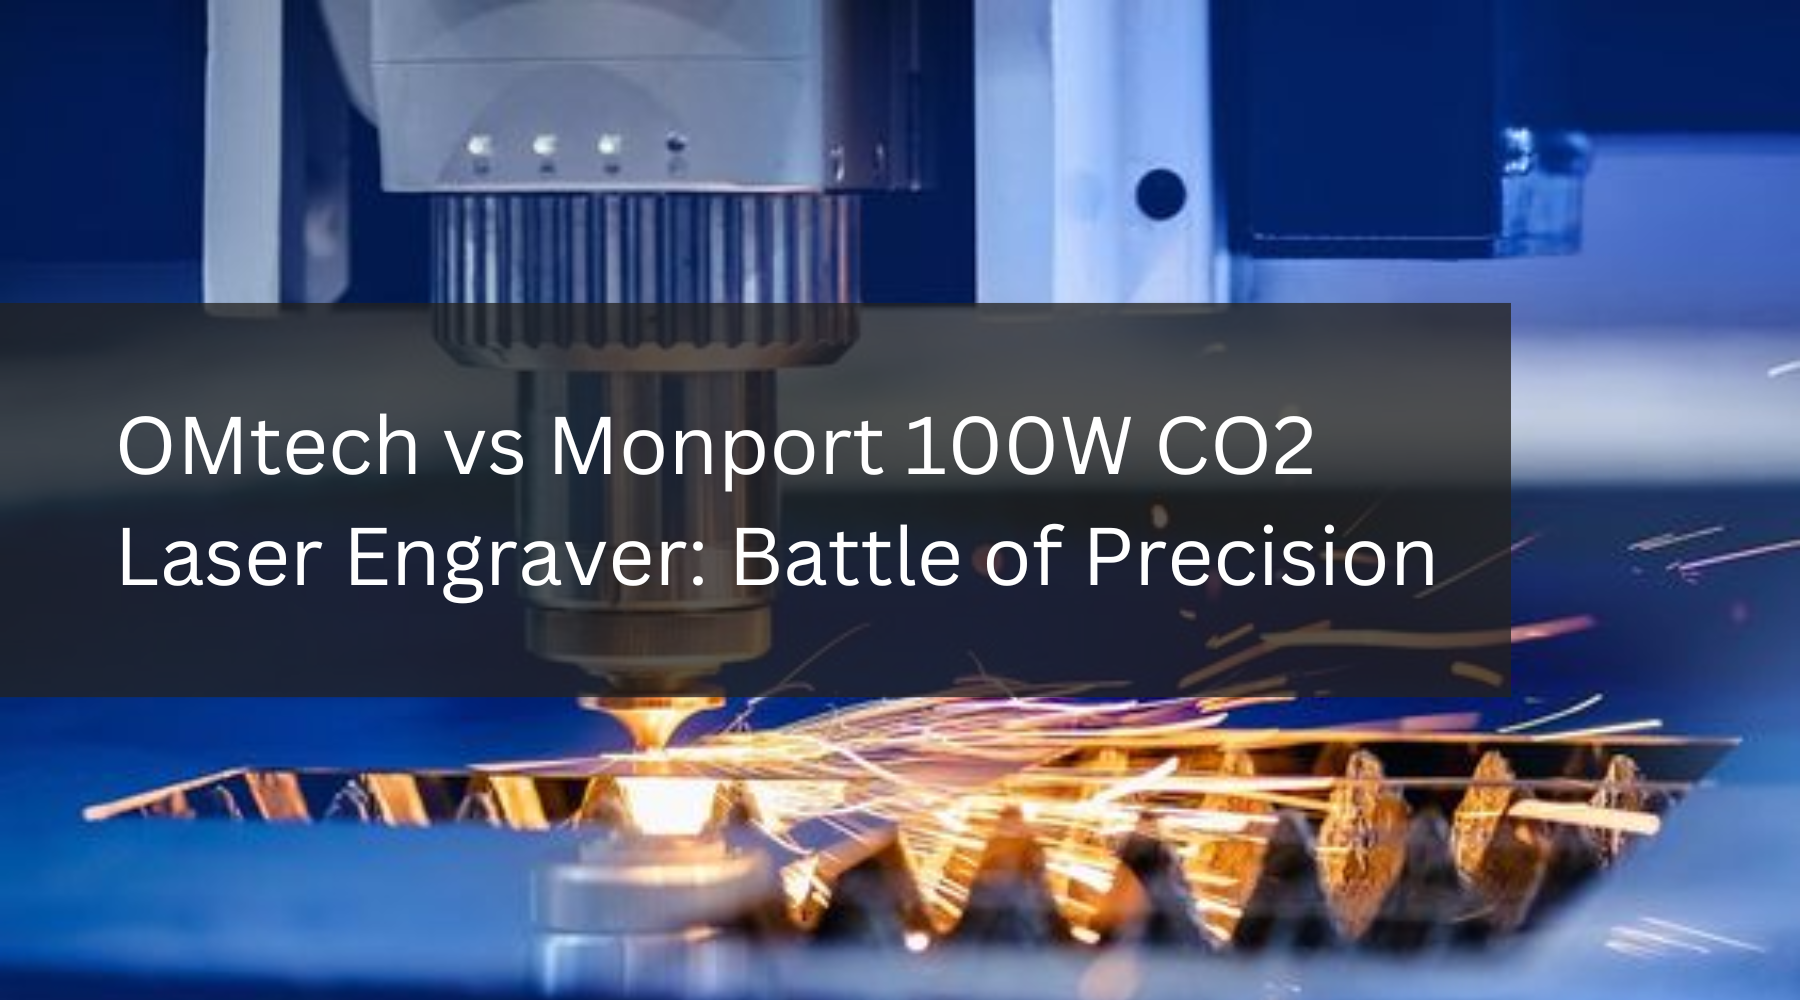 Battle of Precision: OMtech vs Monport 100W CO2 Laser Engraver